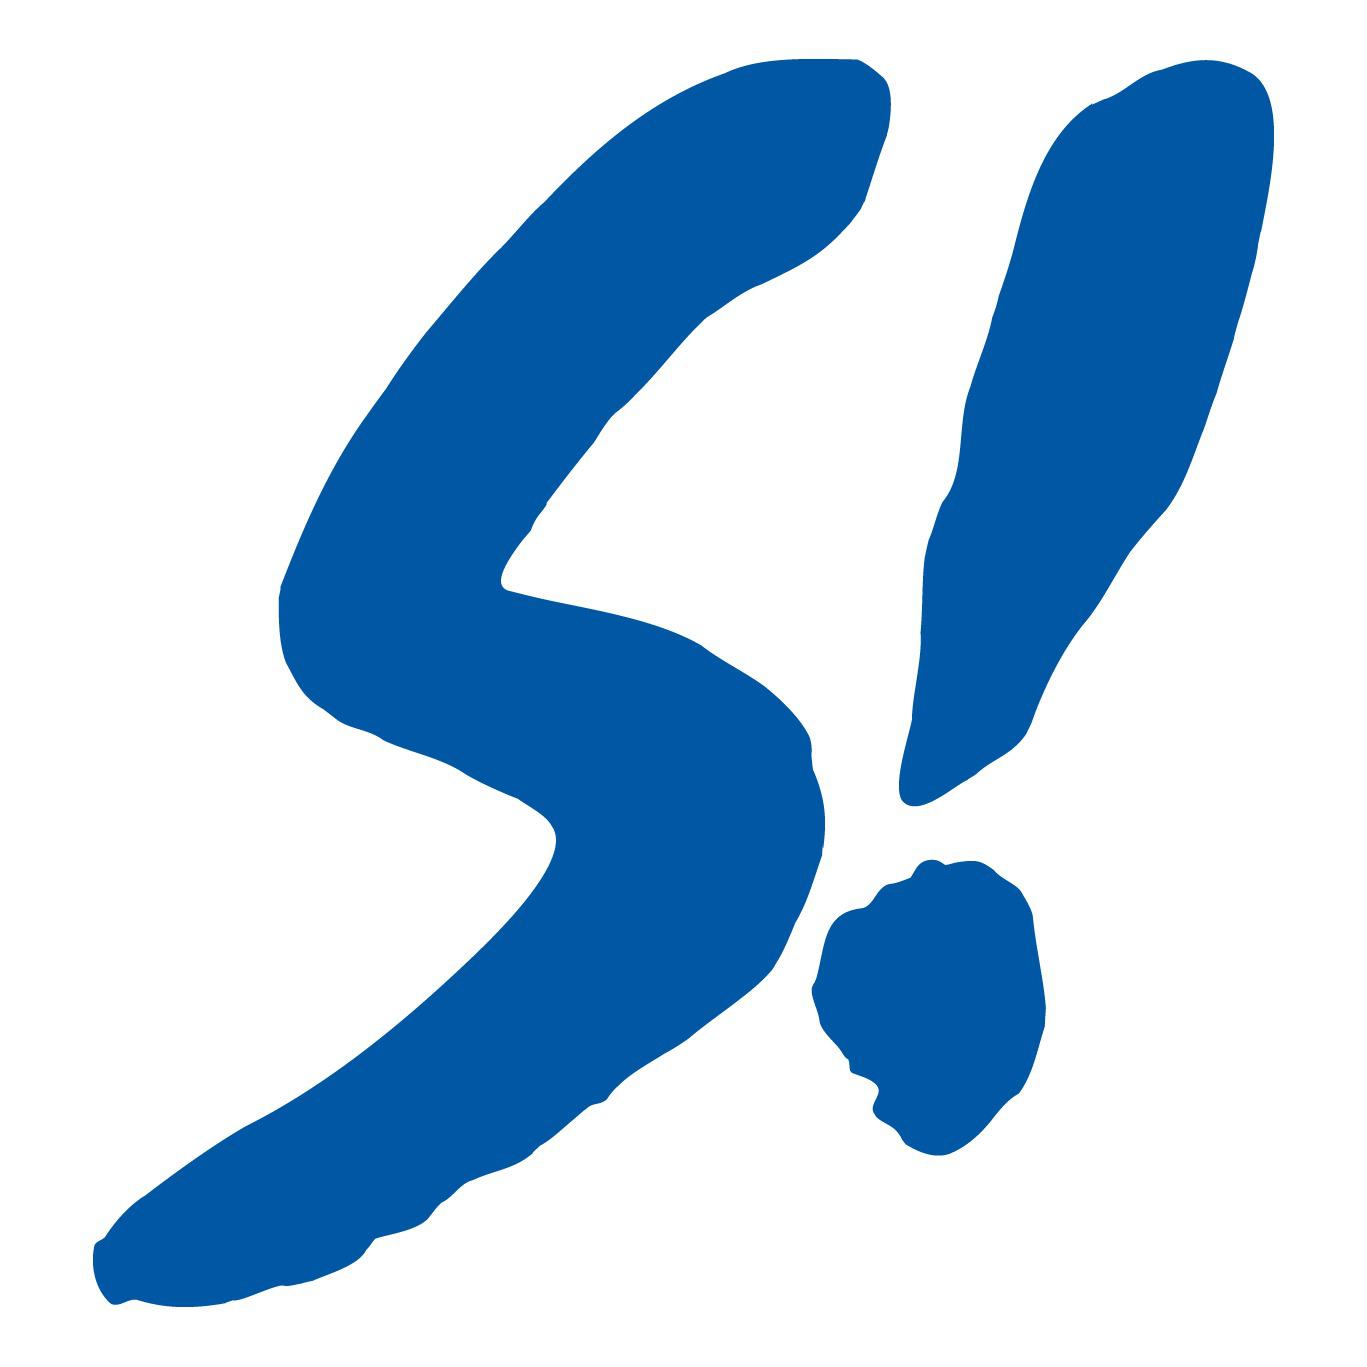 SIEMON GmbH in Emsdetten - Logo